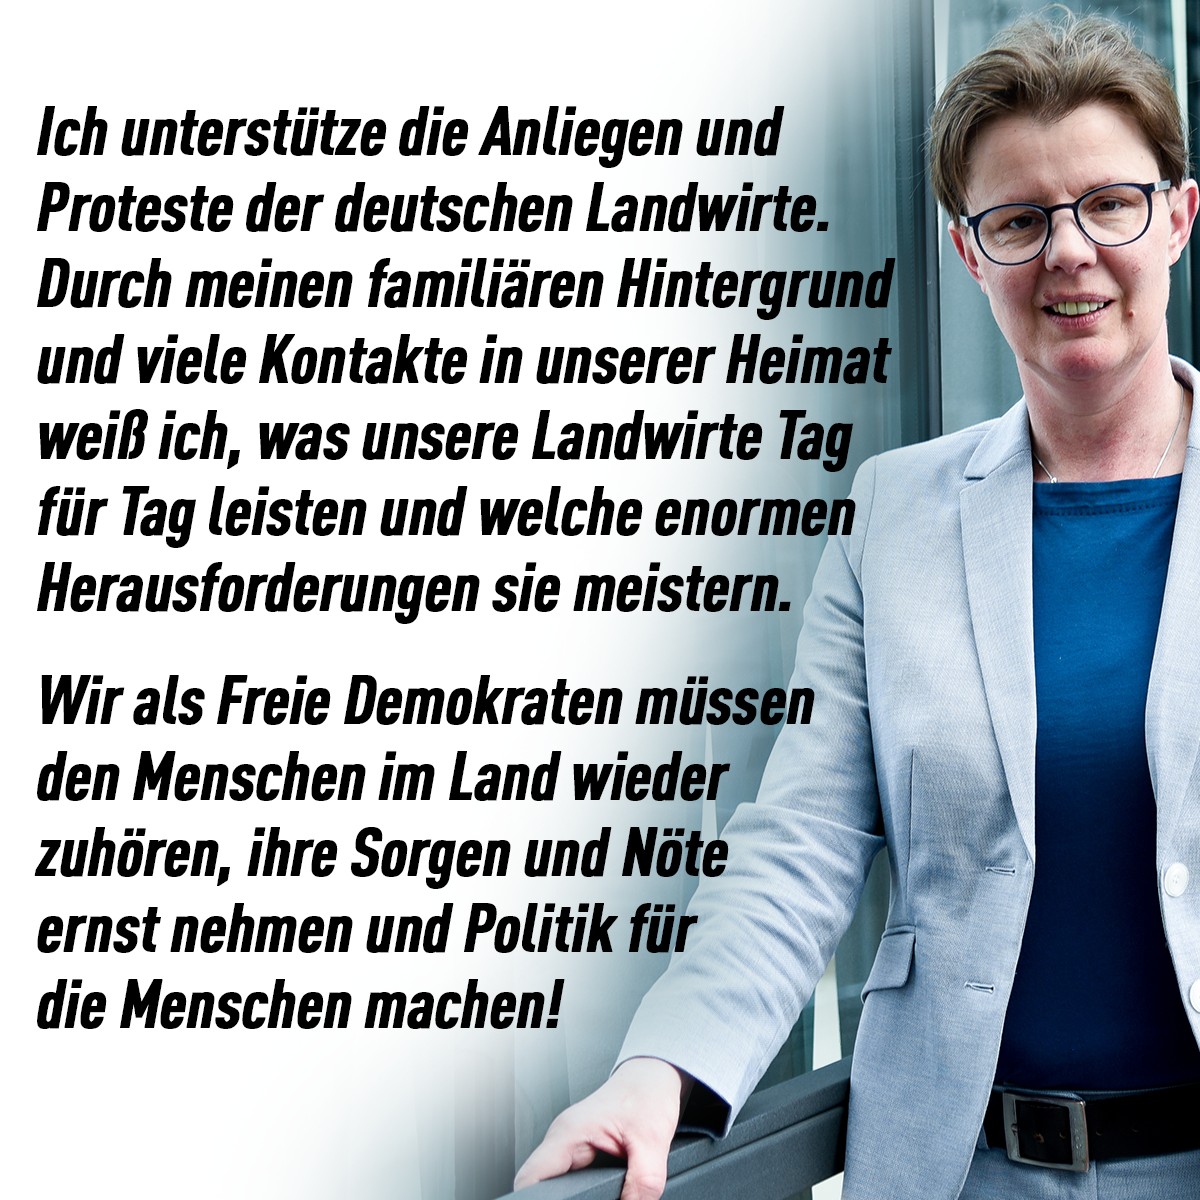 Statement der FDP-Abgeordneten Marion Schardt-Sauer auf Facebook